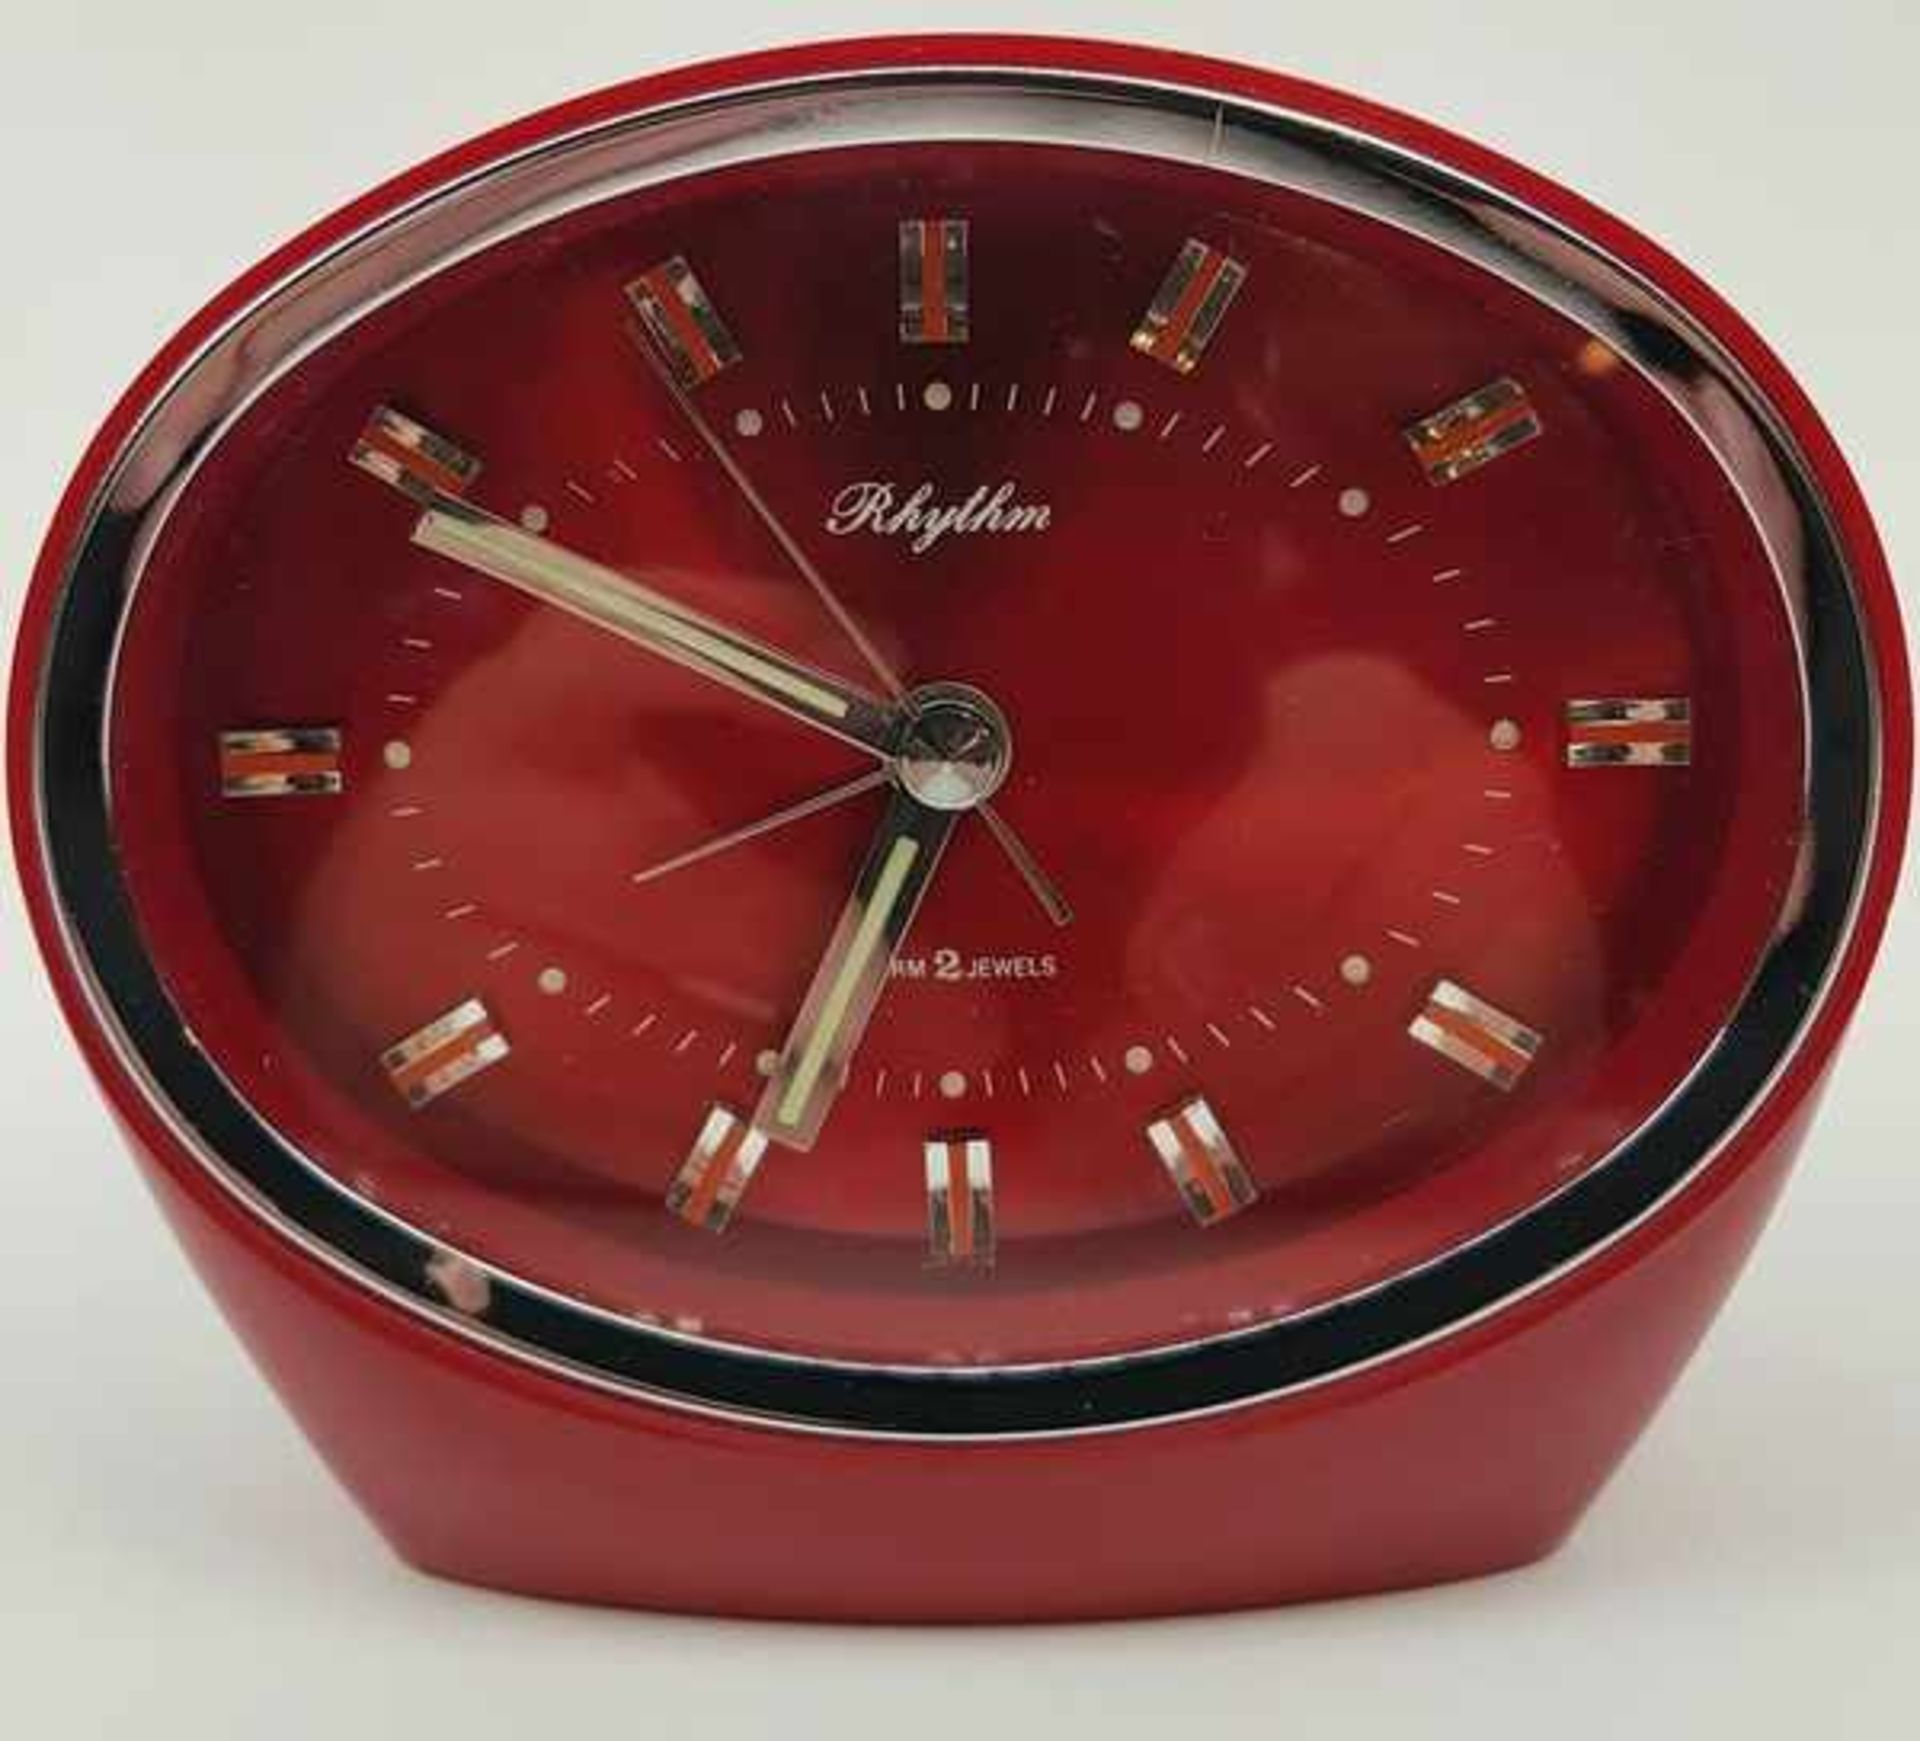 (Design) Klok Rhythm Japan Alarm 2 JewelsRhythm Space Age jaren '70 klok, mechanisch met alarm.